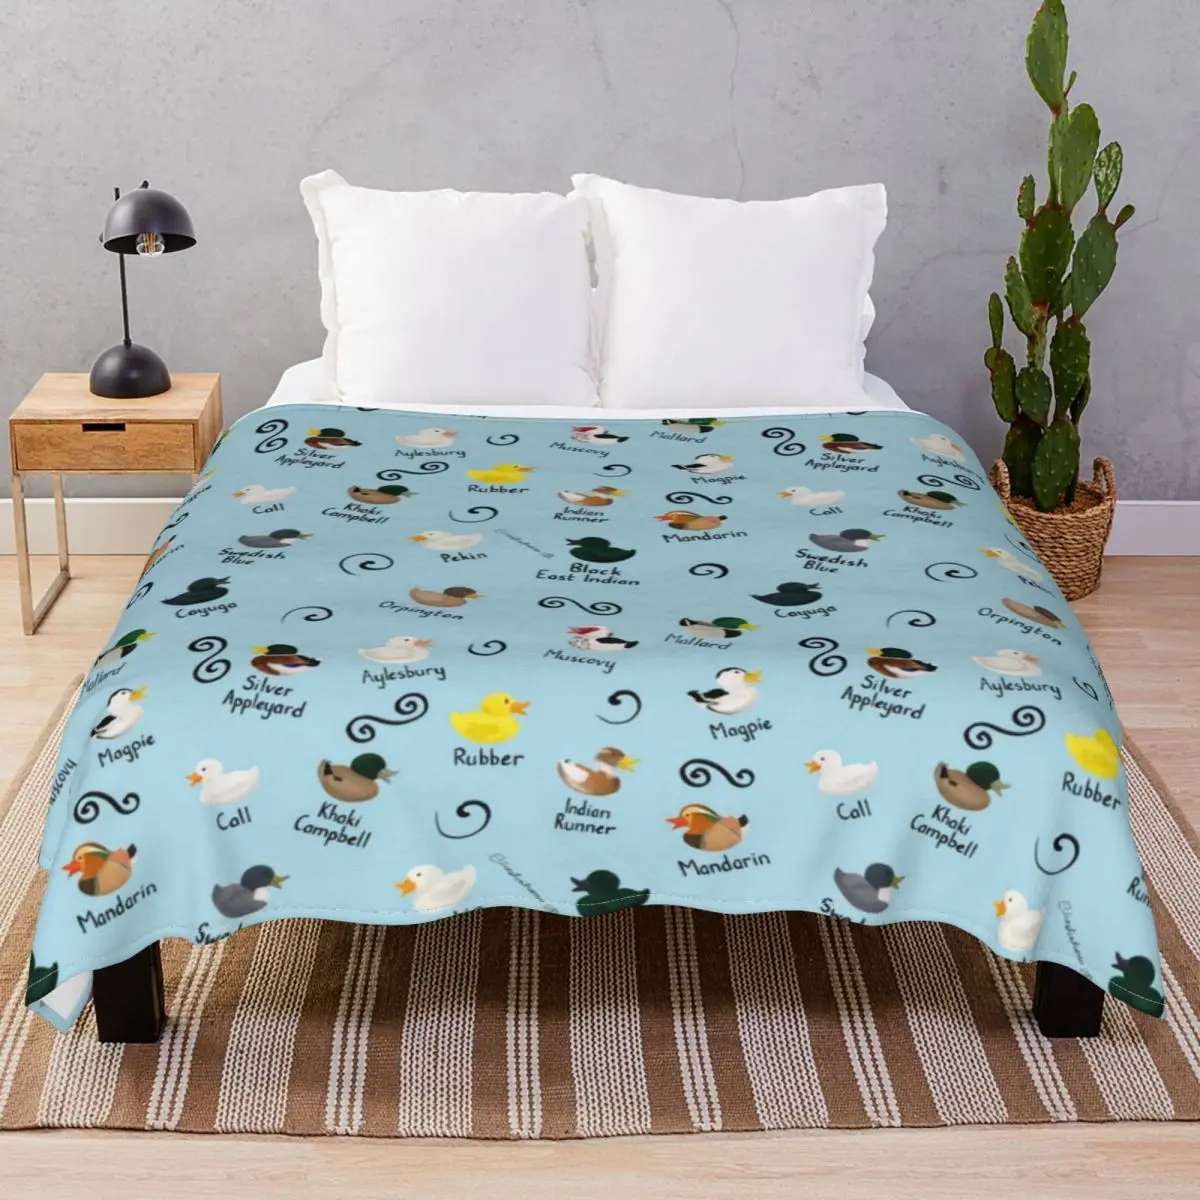 Ducks Ducks Ducks Blanket Velvet Spring Autumn Multi-function Throw Blankets for Bed Home Couch Camp Office